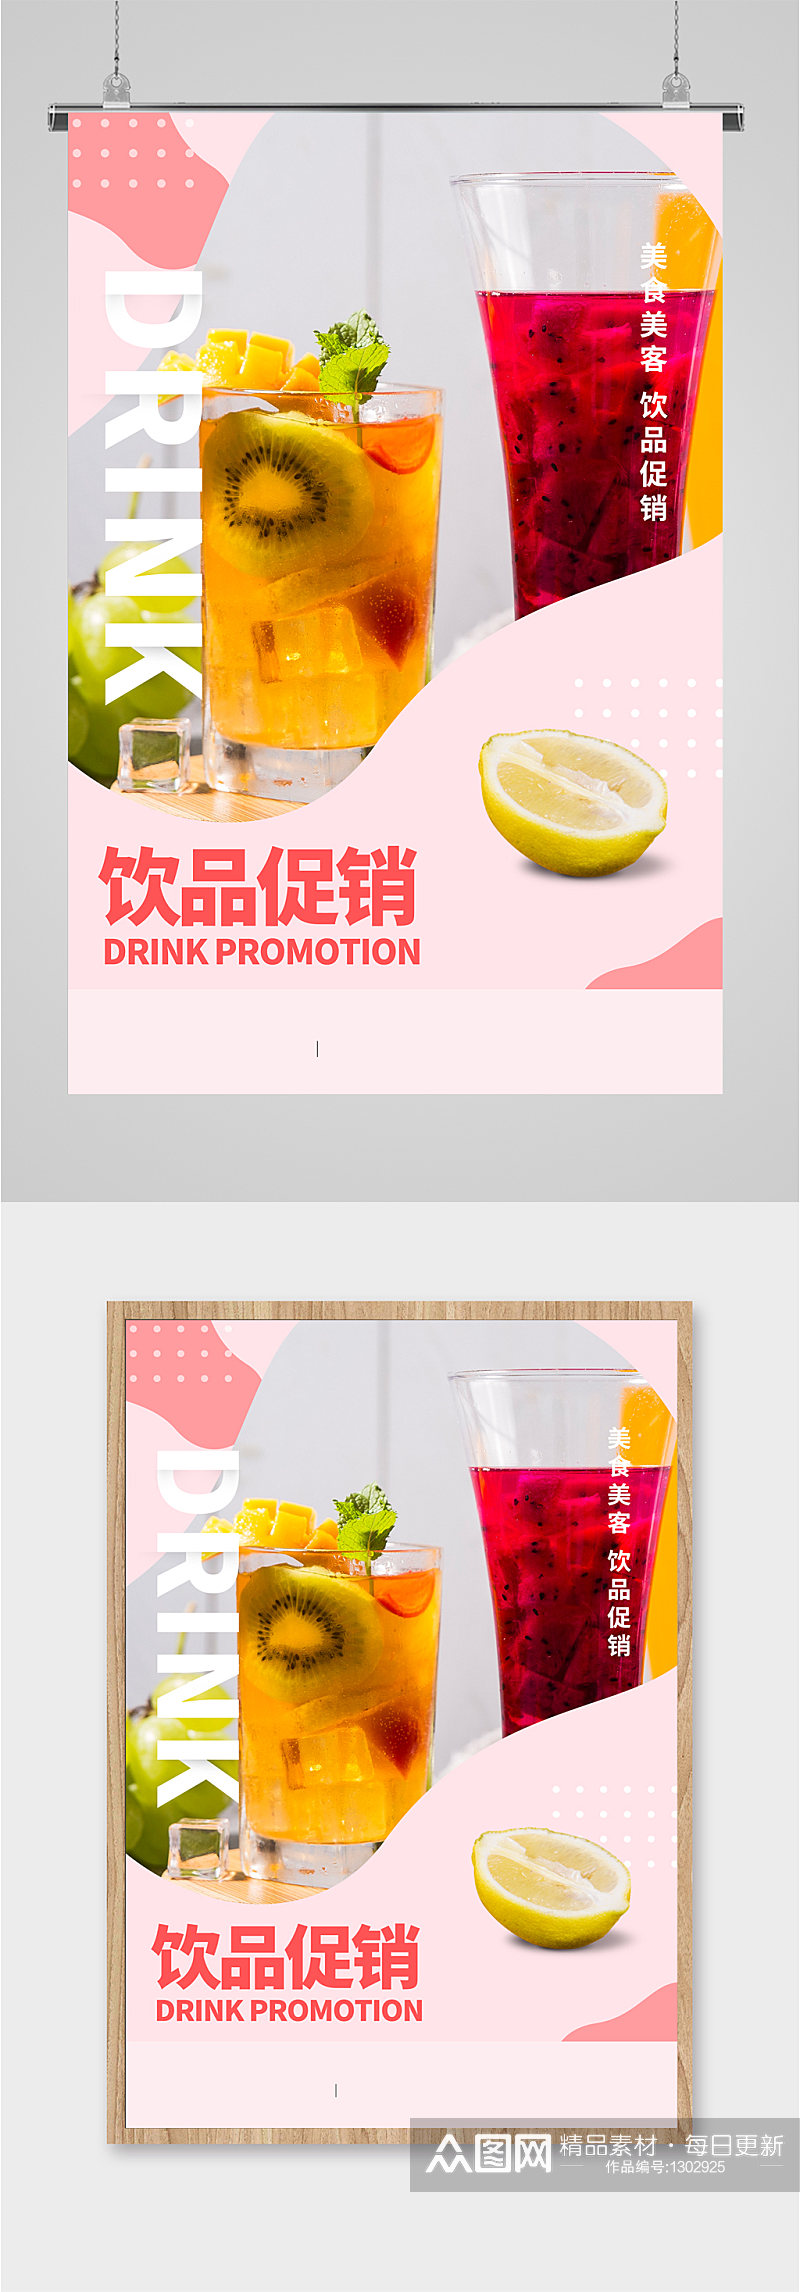 饮品水果茶奶茶店促销海报素材